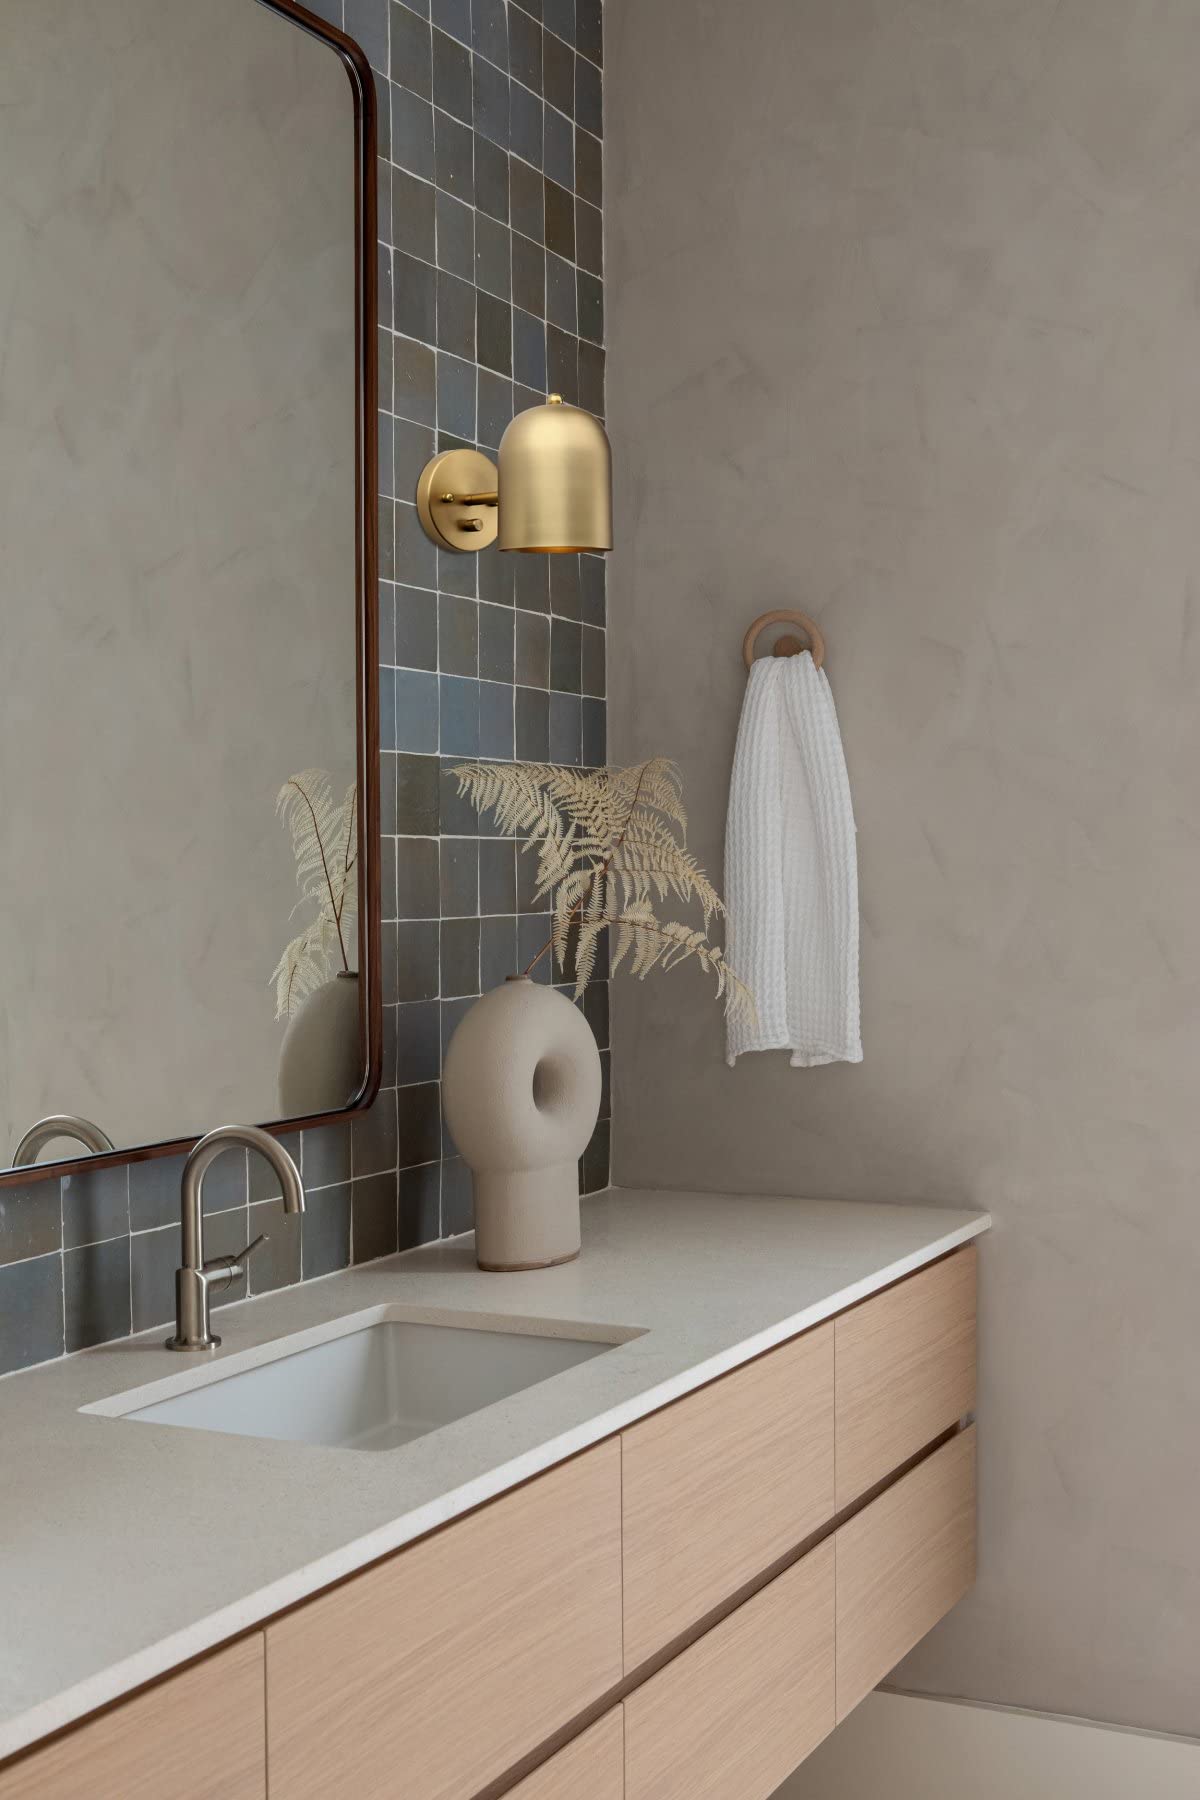 Modern Dimmable, Brass Finish Wall Light Lamp Adjust Light Head Wall Lighting